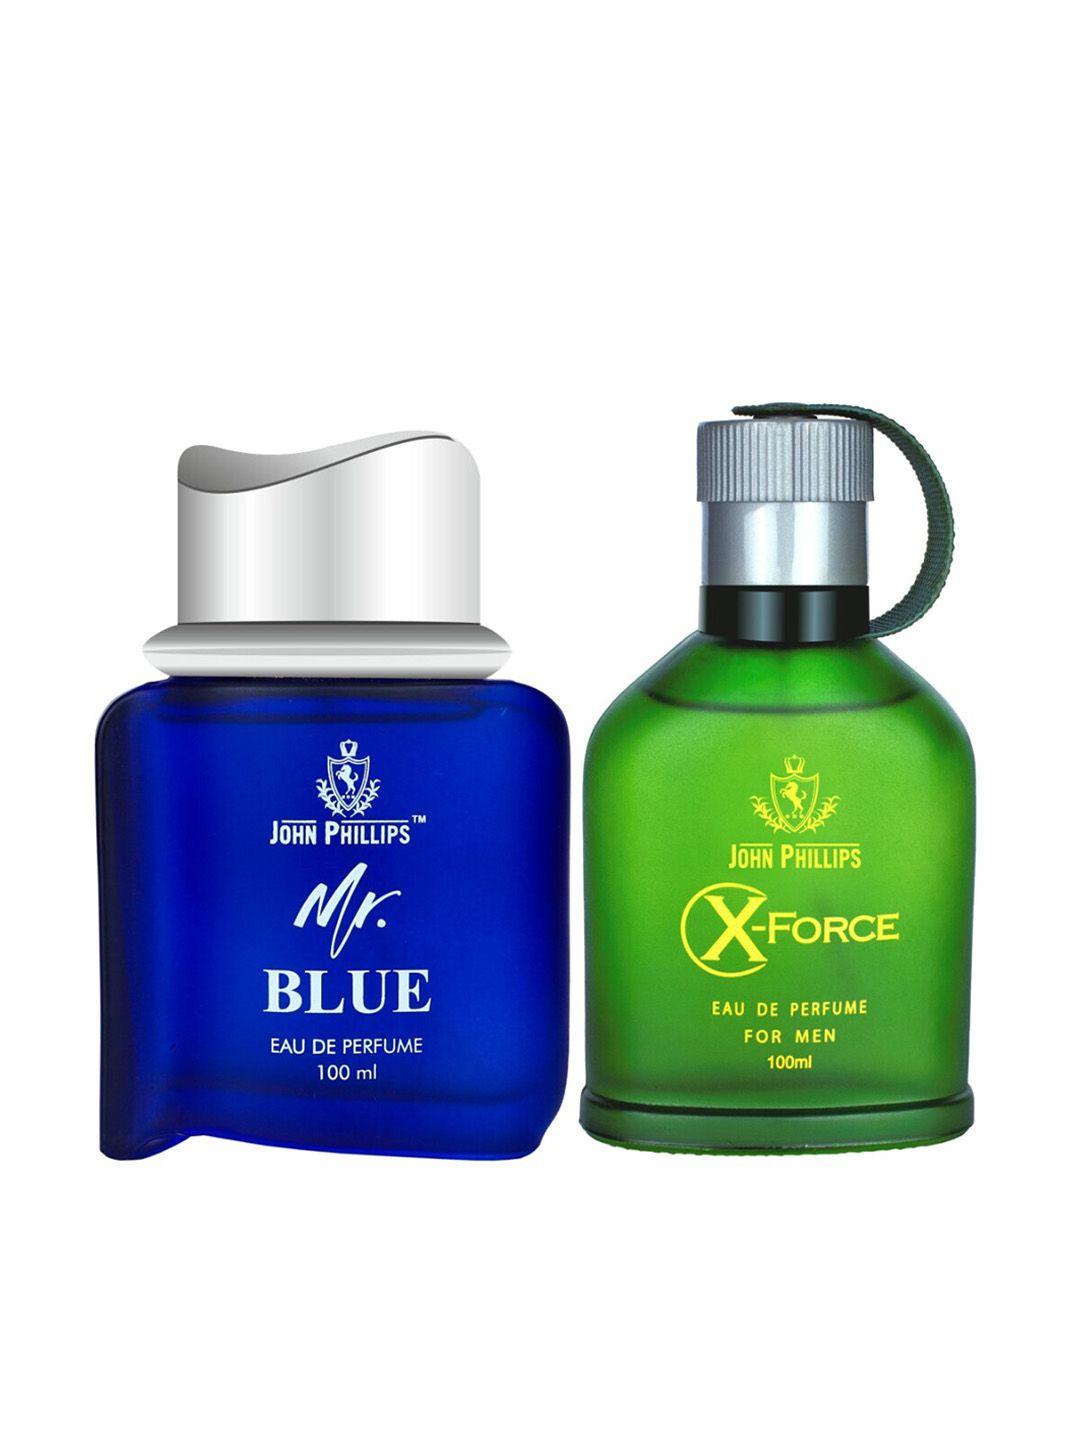 john phillips mr blue & x force set of 2 long lasting eau de parfum  100 ml each